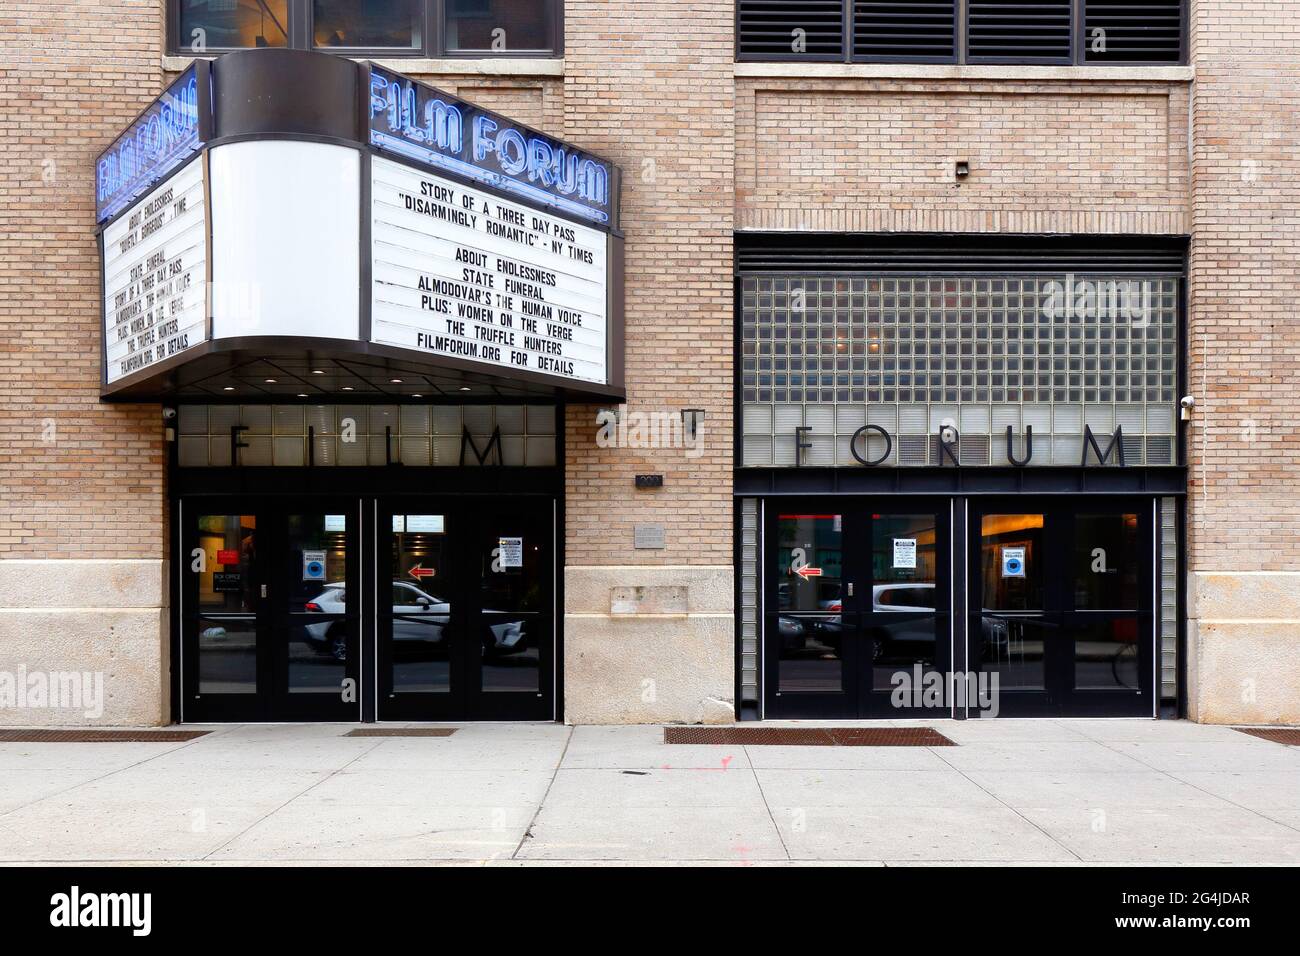 Film Forum, 209 West Houston St, New York, NYC Schaufenster Foto eines unabhängigen Kinos im West Village Viertel von Manhattan. Stockfoto